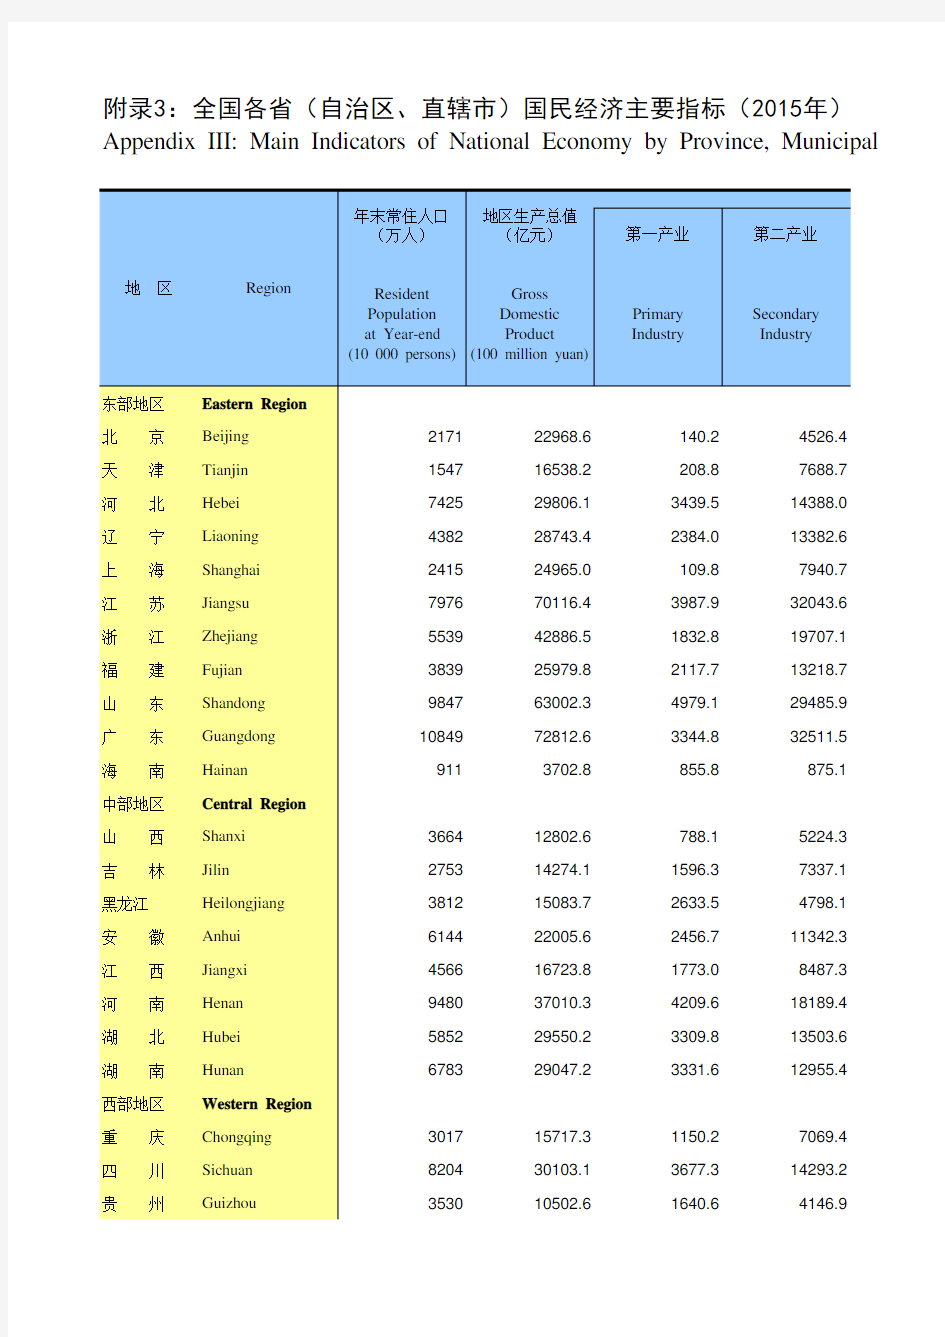 中国统计年鉴：全国各省(自治区、直辖市)国民经济主要指标(2015年)